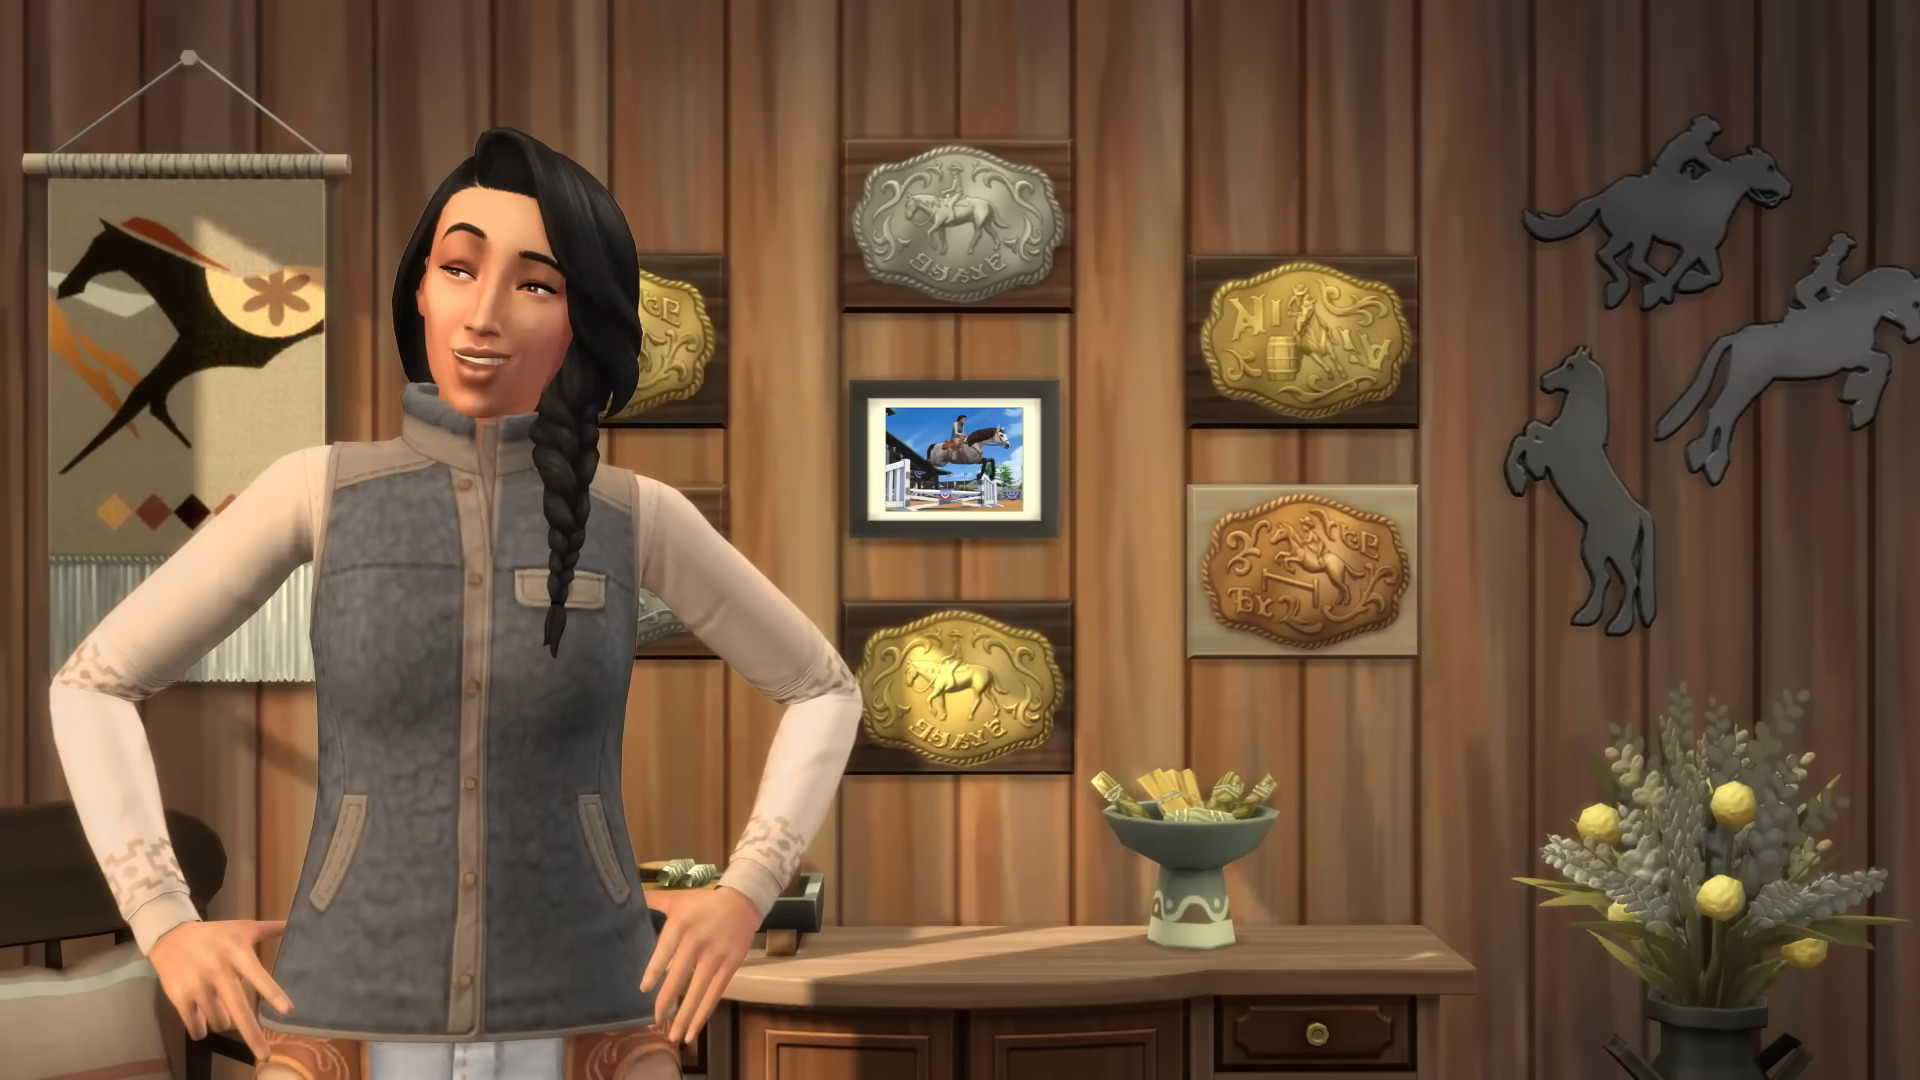 The Sims 4 – для симулятора жизни вышло DLC «Конное ранчо»